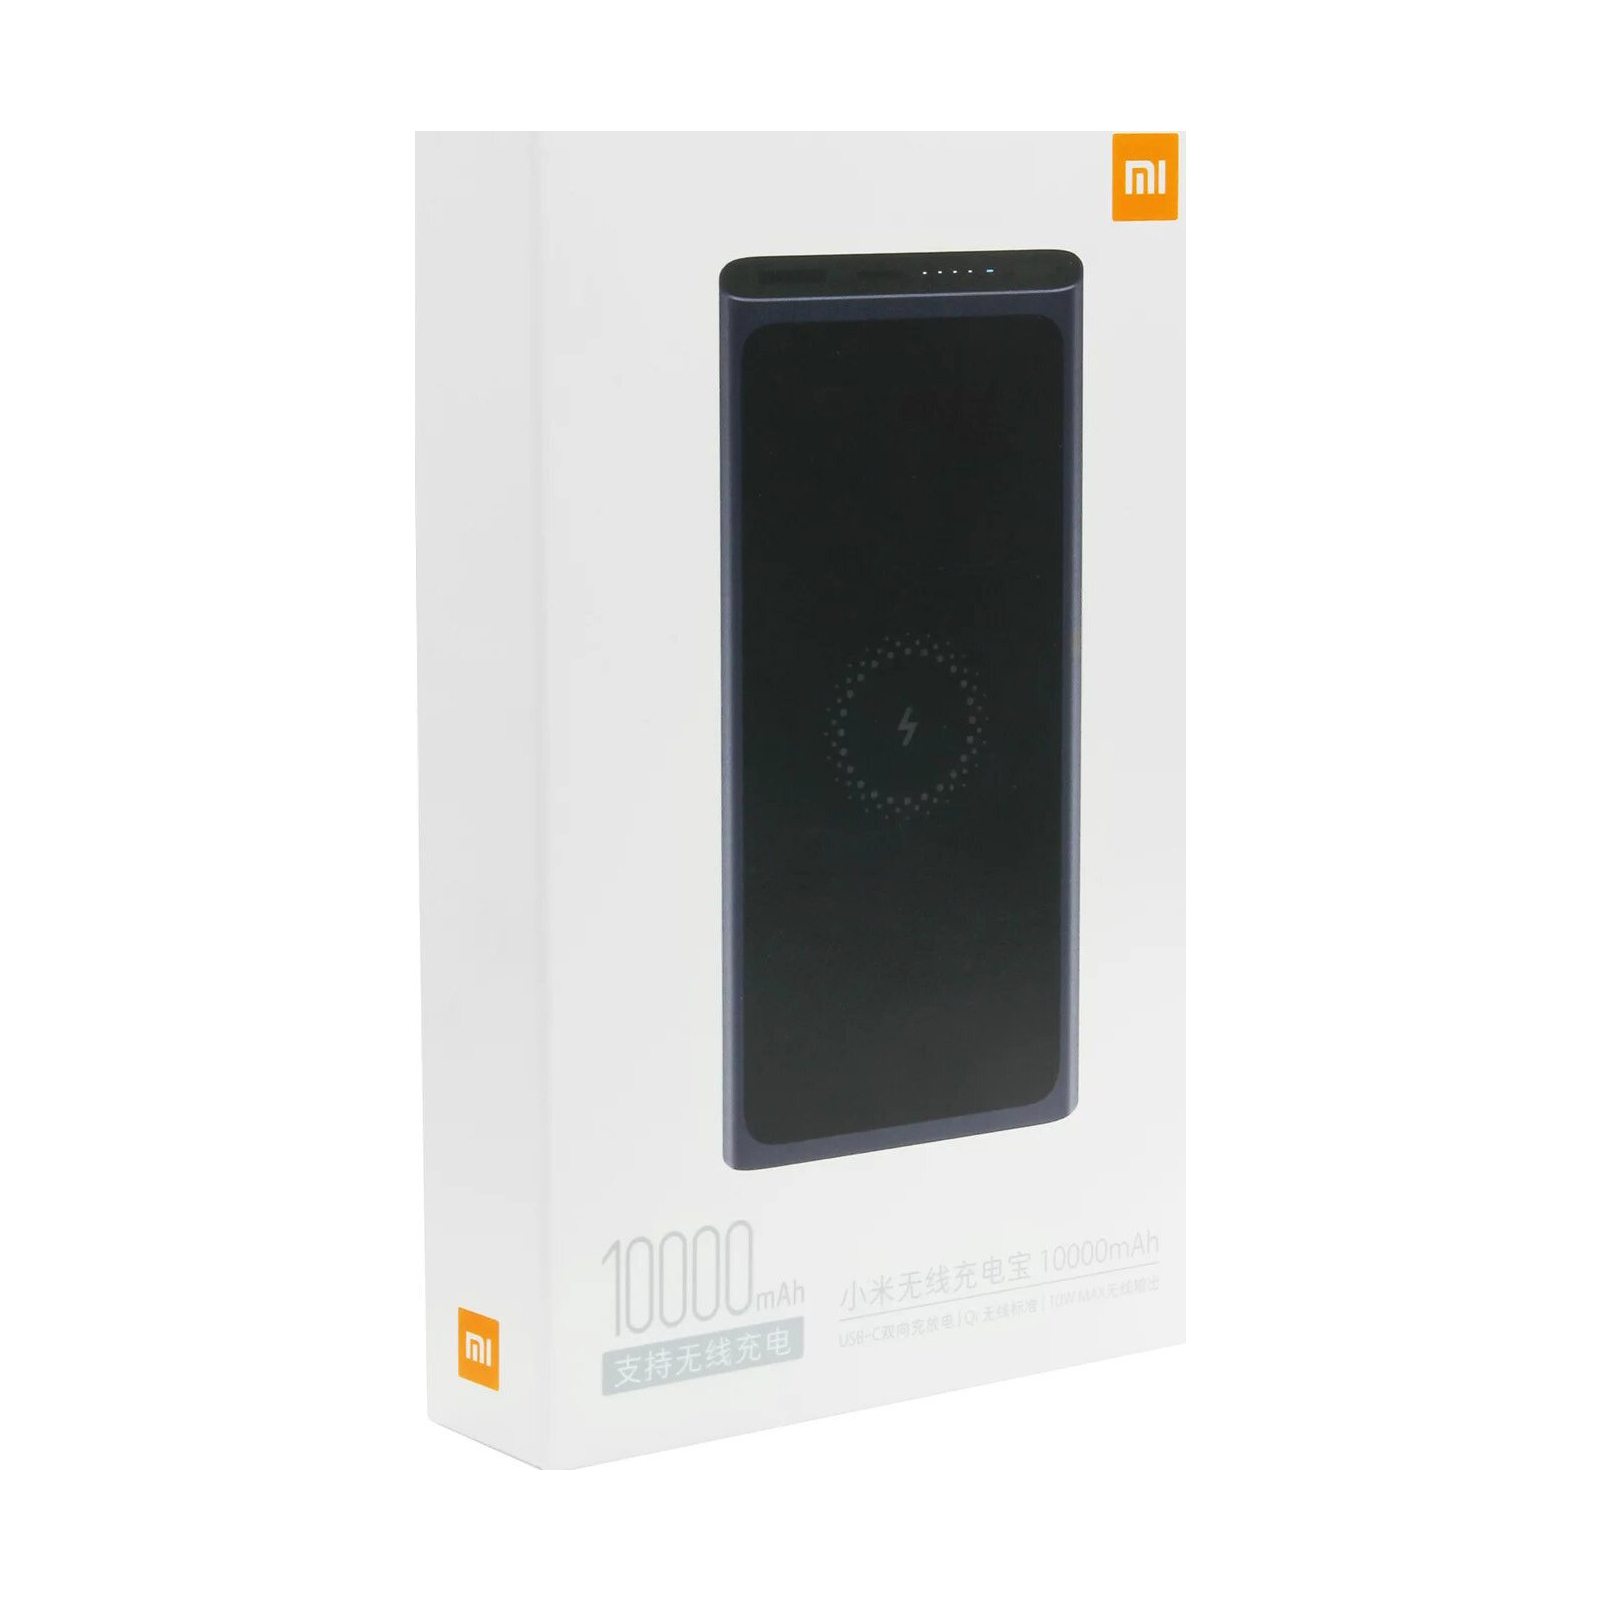 Батарея универсальная Xiaomi Mi Power Bank 10000 mAh QC3.0 + беспроводная зарядка Black (VXN4269 / 495077) изображение 8